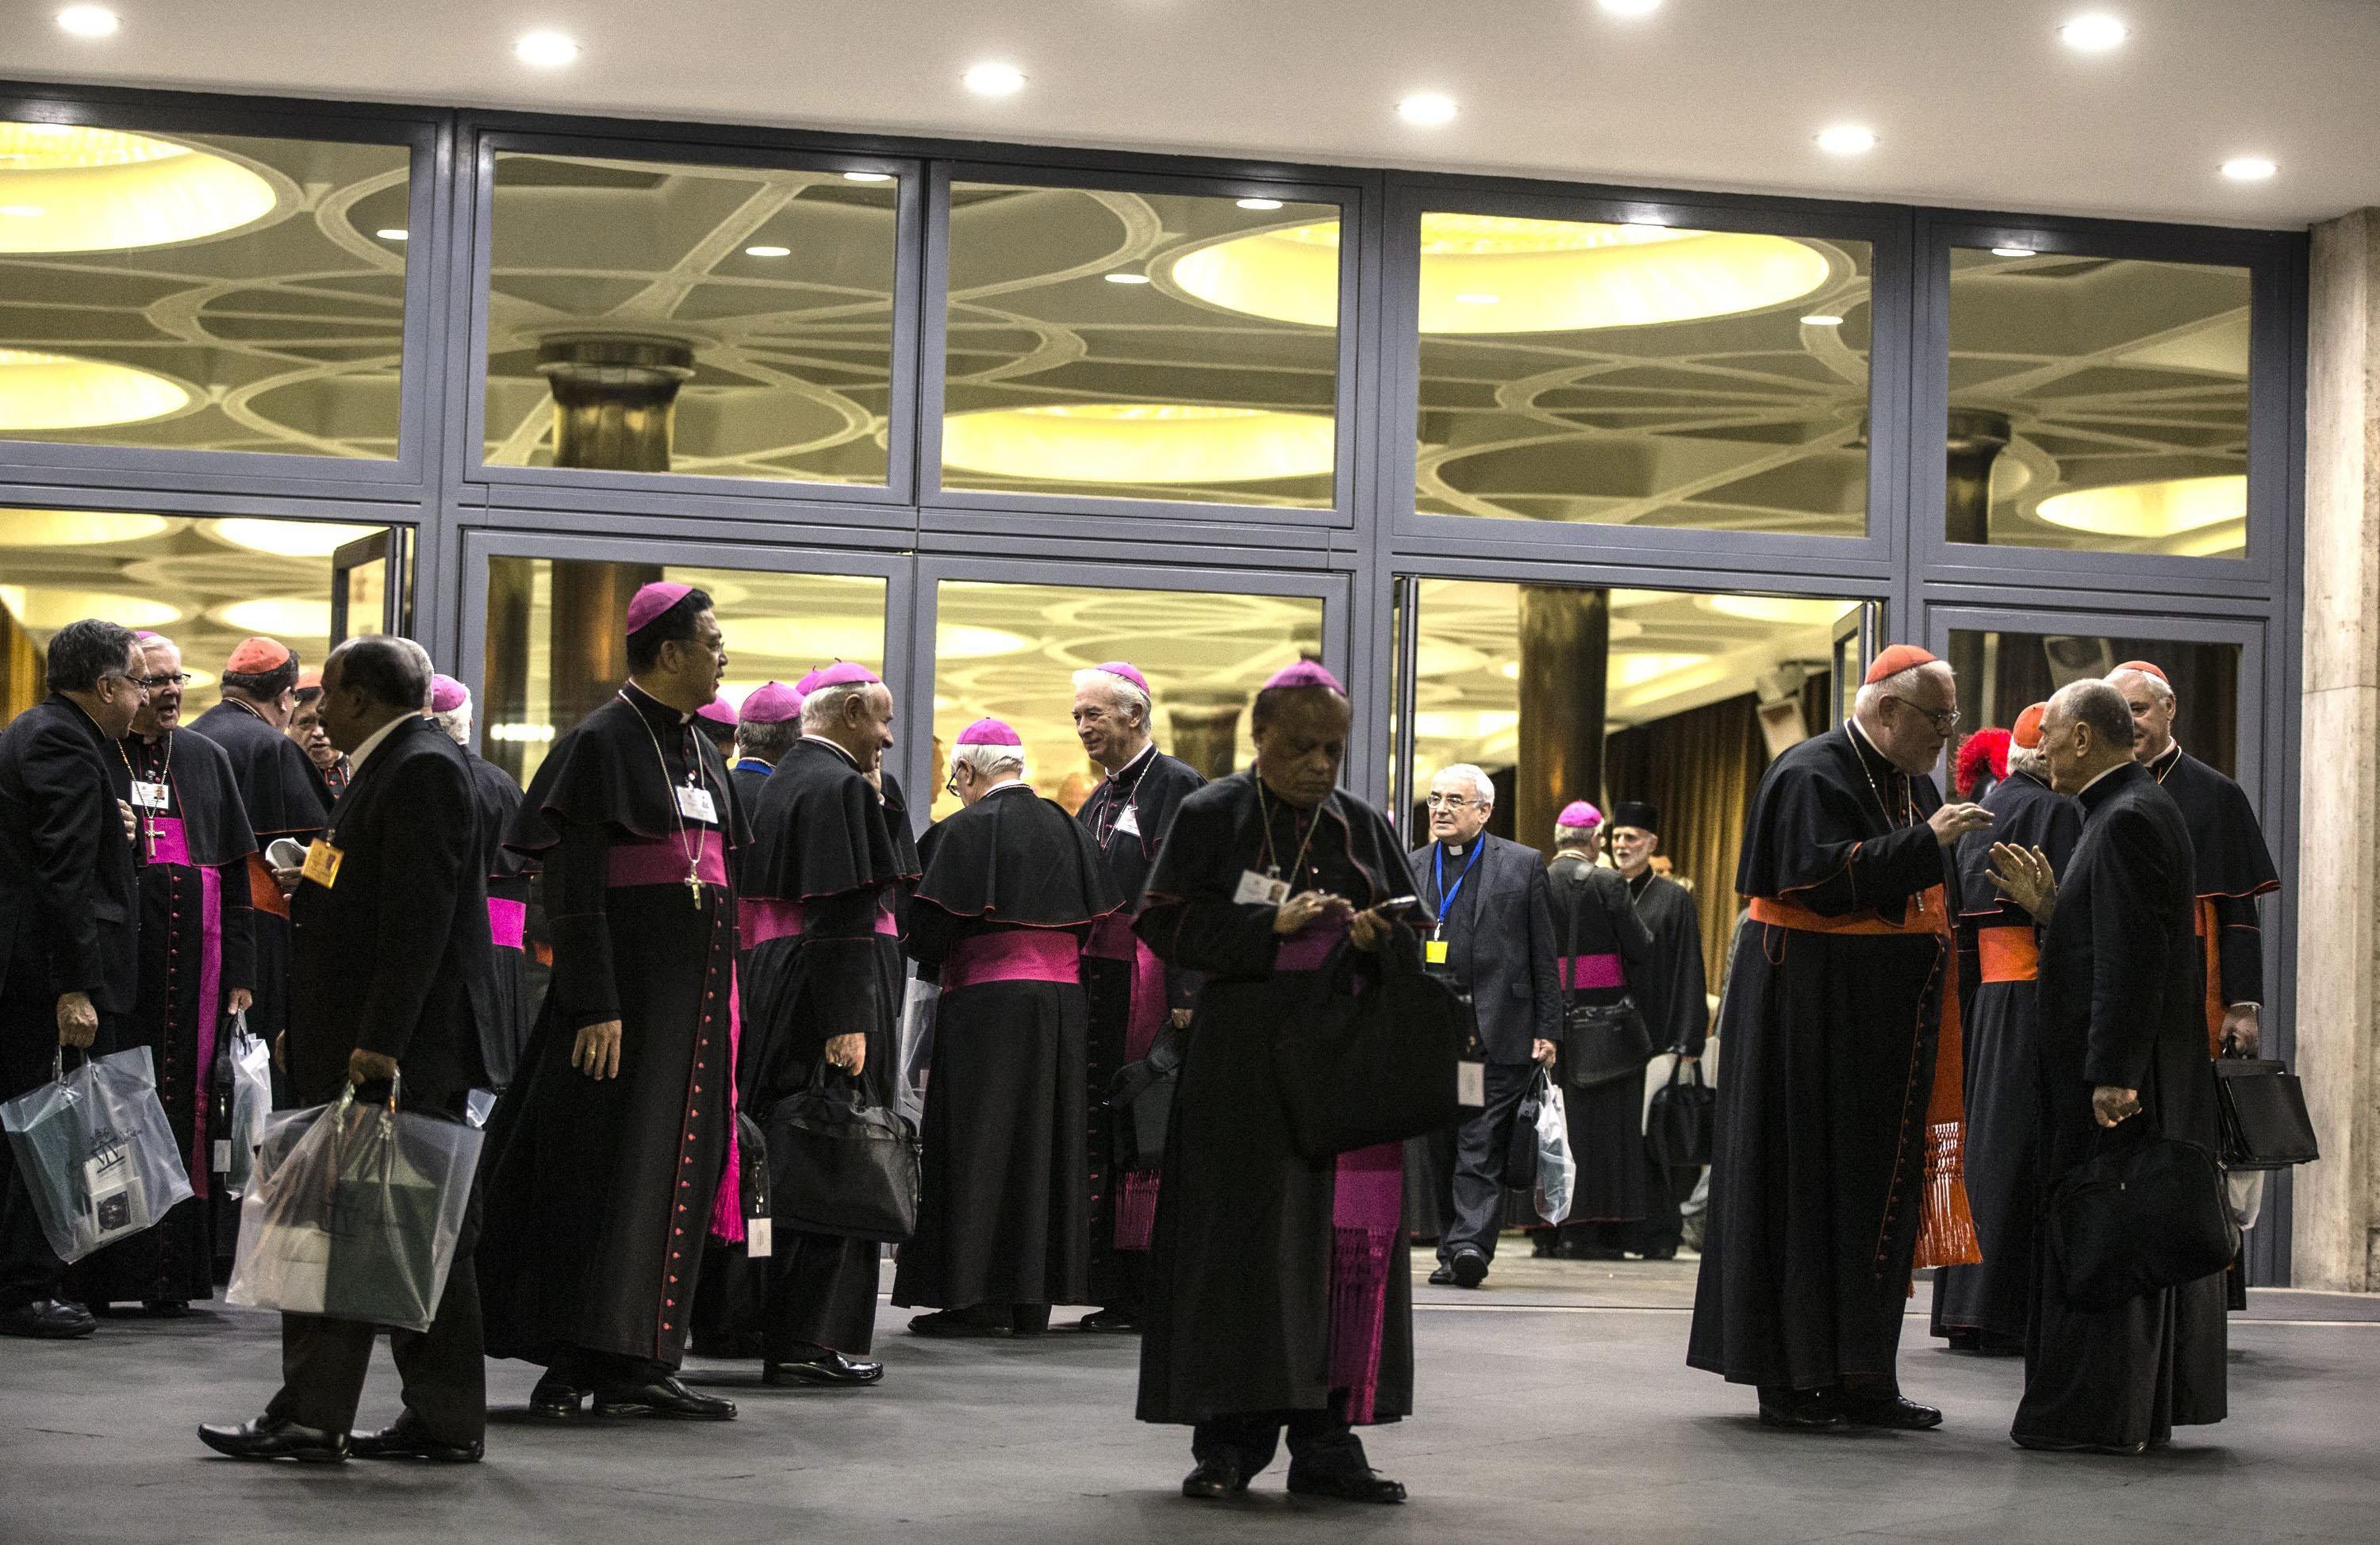 Синод Епископов Римско-Католической Церкви в субботу, 24 октября, в своем итоговом документе подтвердил запрет однополых браков